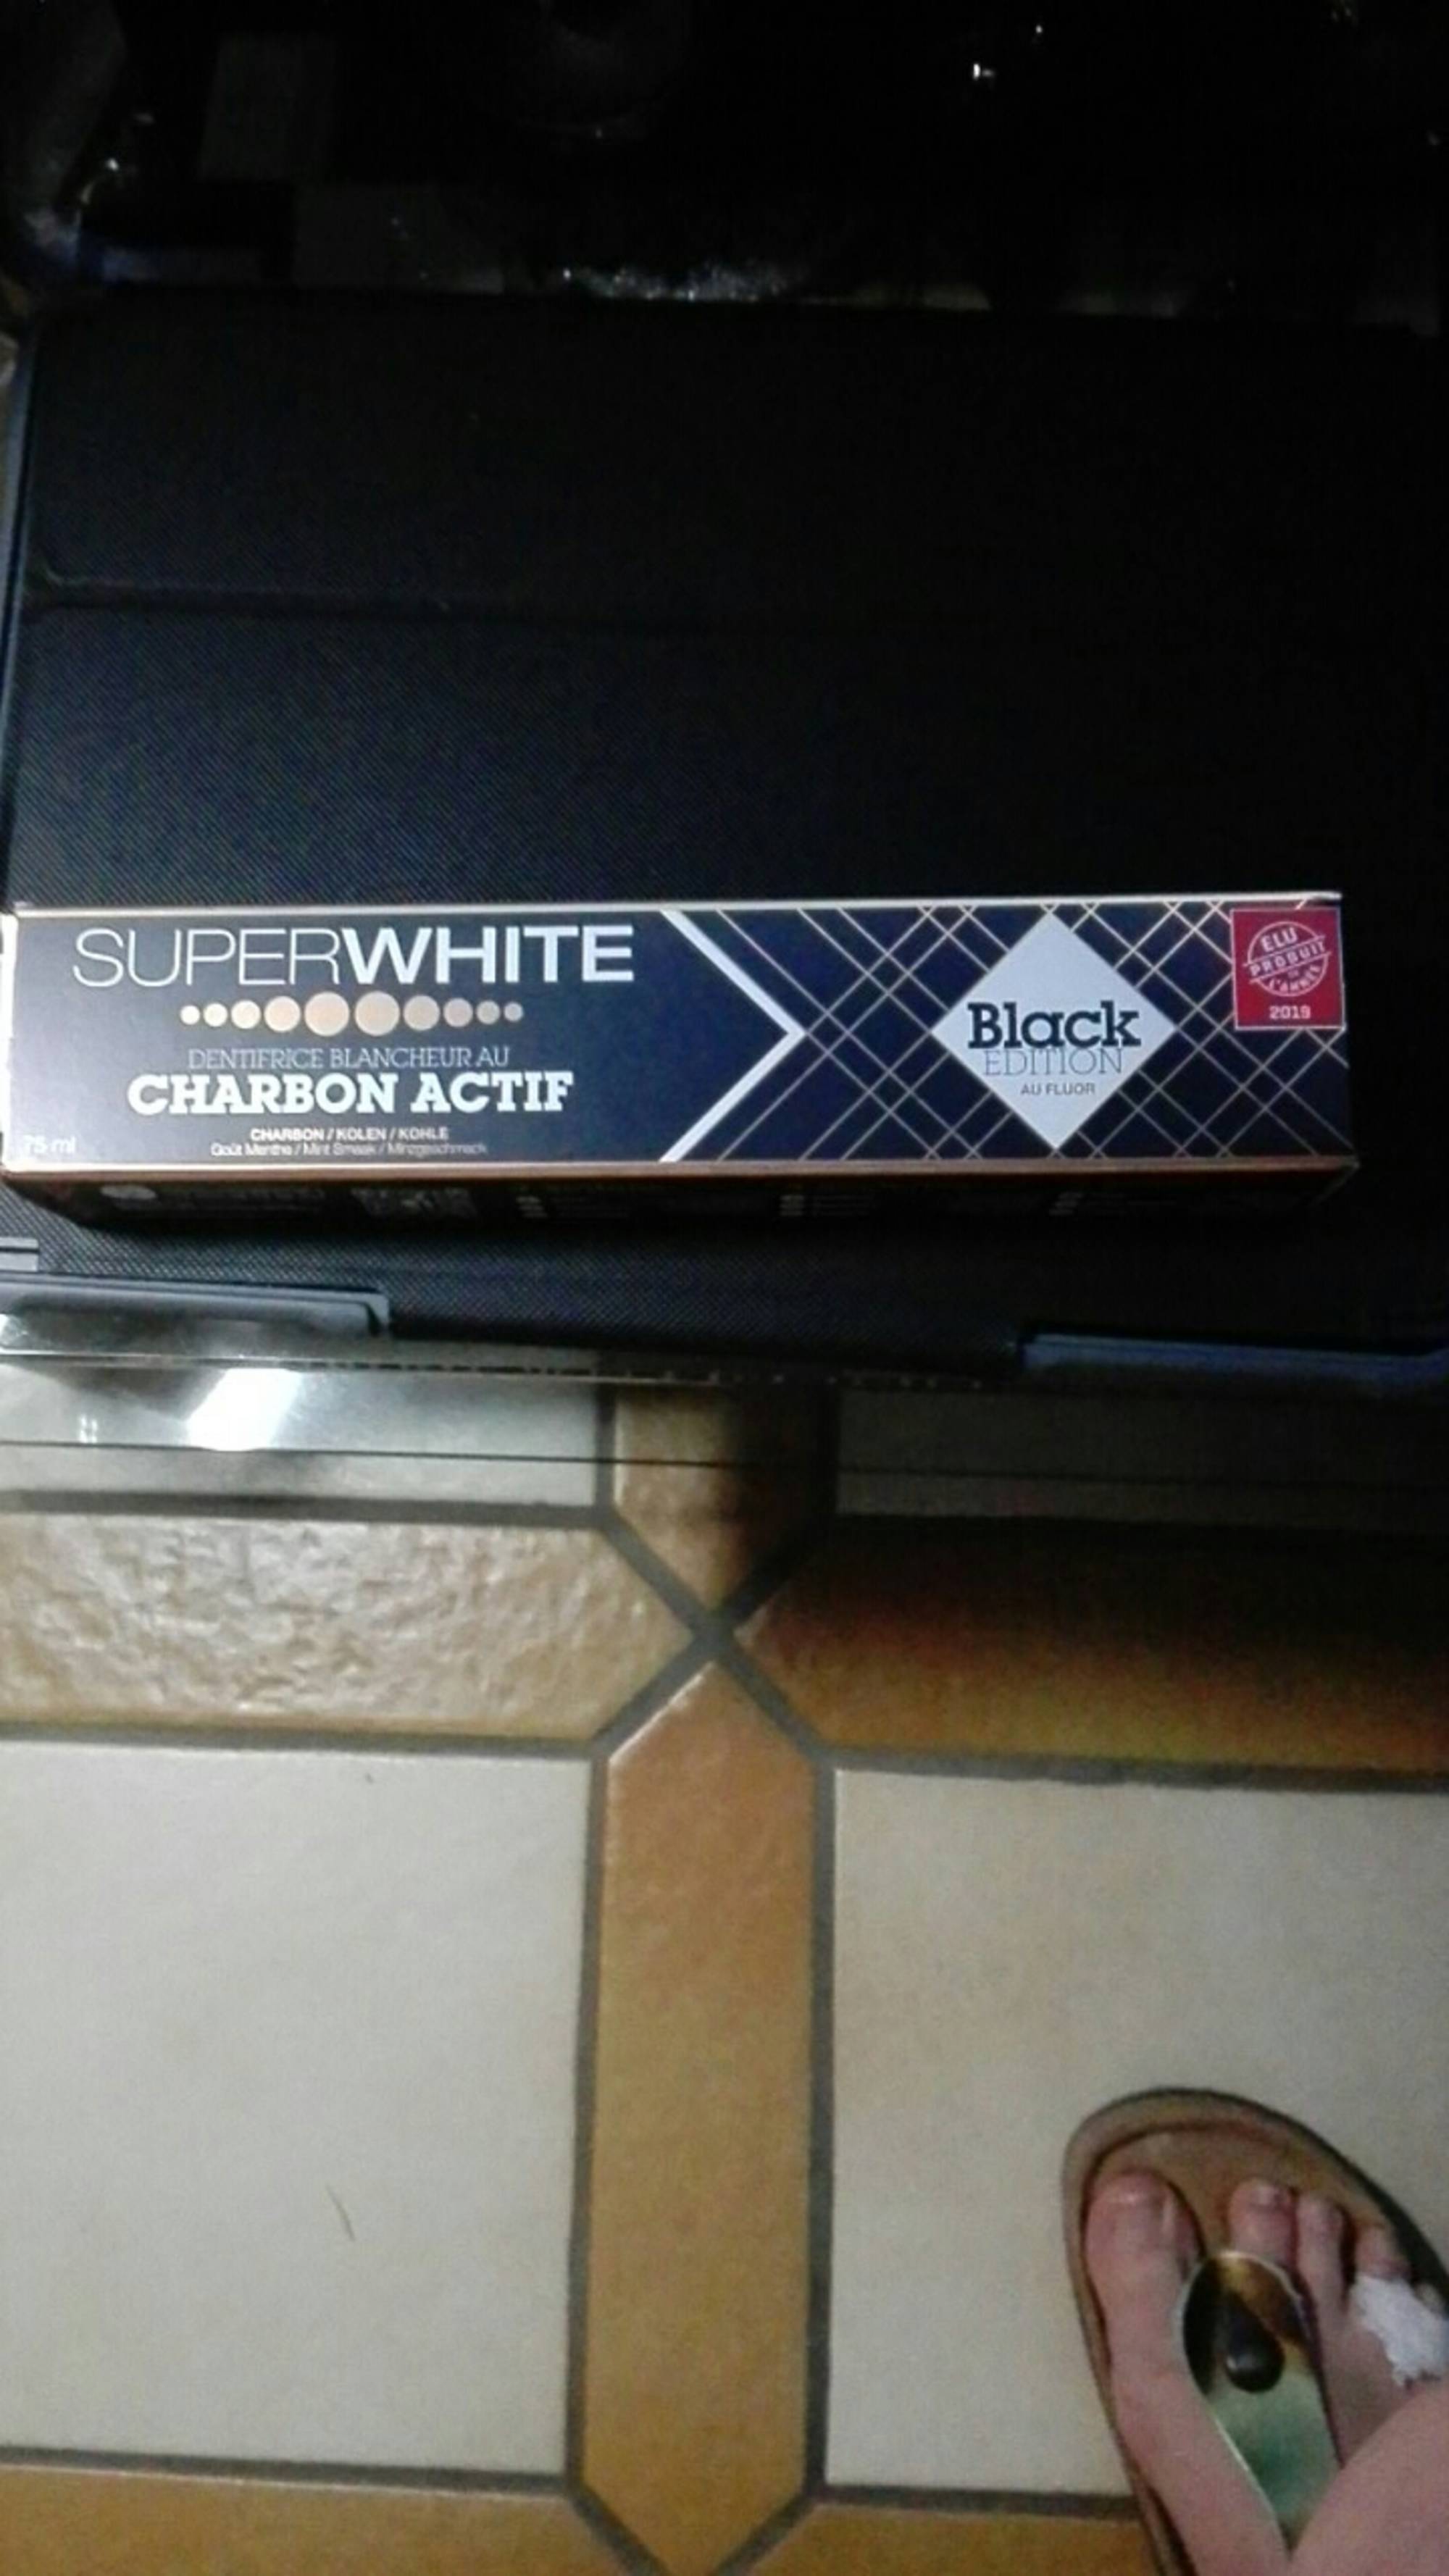 SUPERWHITE - Black edition - Dentifrice blancheur au charbon actif